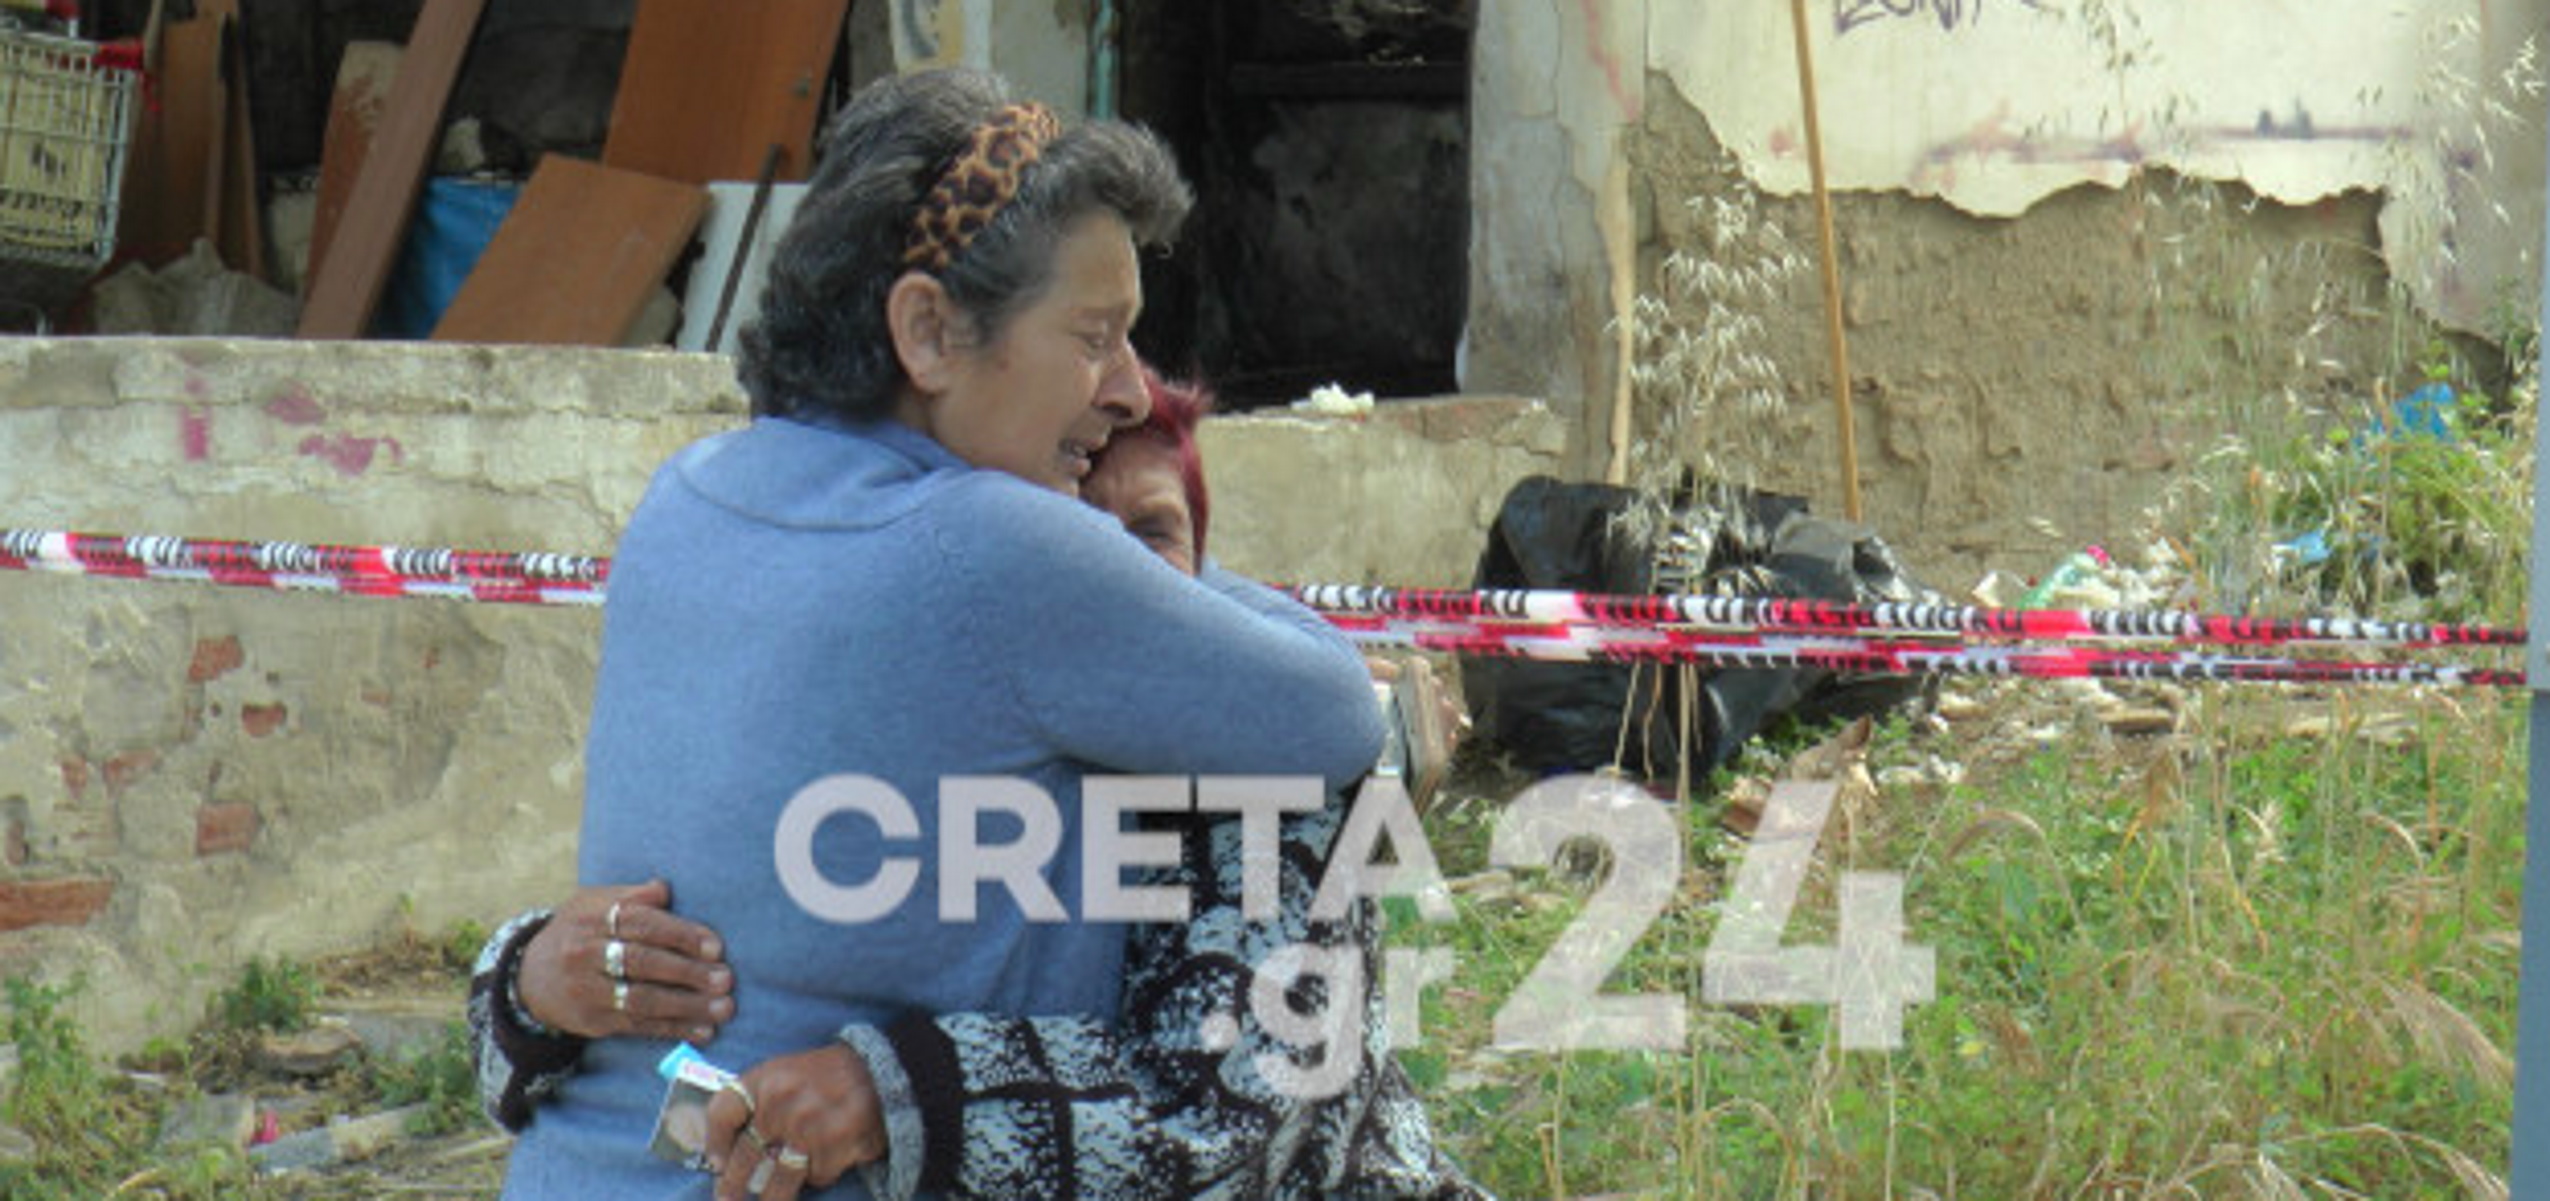 Χανιά: Θλίψη για τον 60χρονο άστεγο που κάηκε ζωντανός σε εγκαταλειμμένο σπίτι – Τραγική φιγούρα η 90χρονη μητέρα του